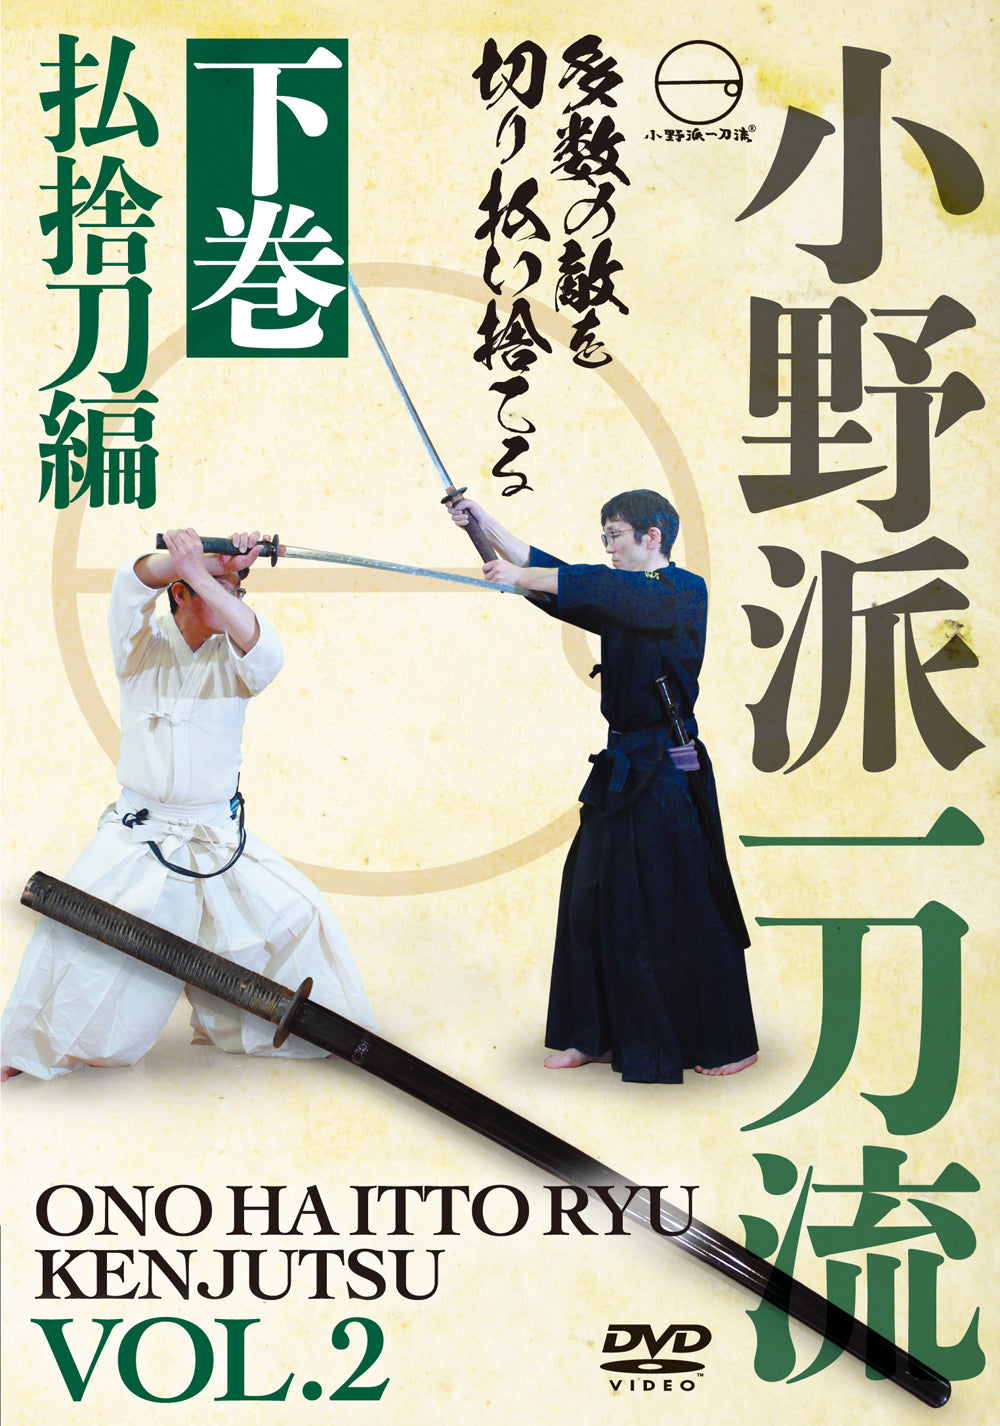 Ono Ha Itto Ryu Kenjutsu Vol 2 DVD by Toru Ishizaki